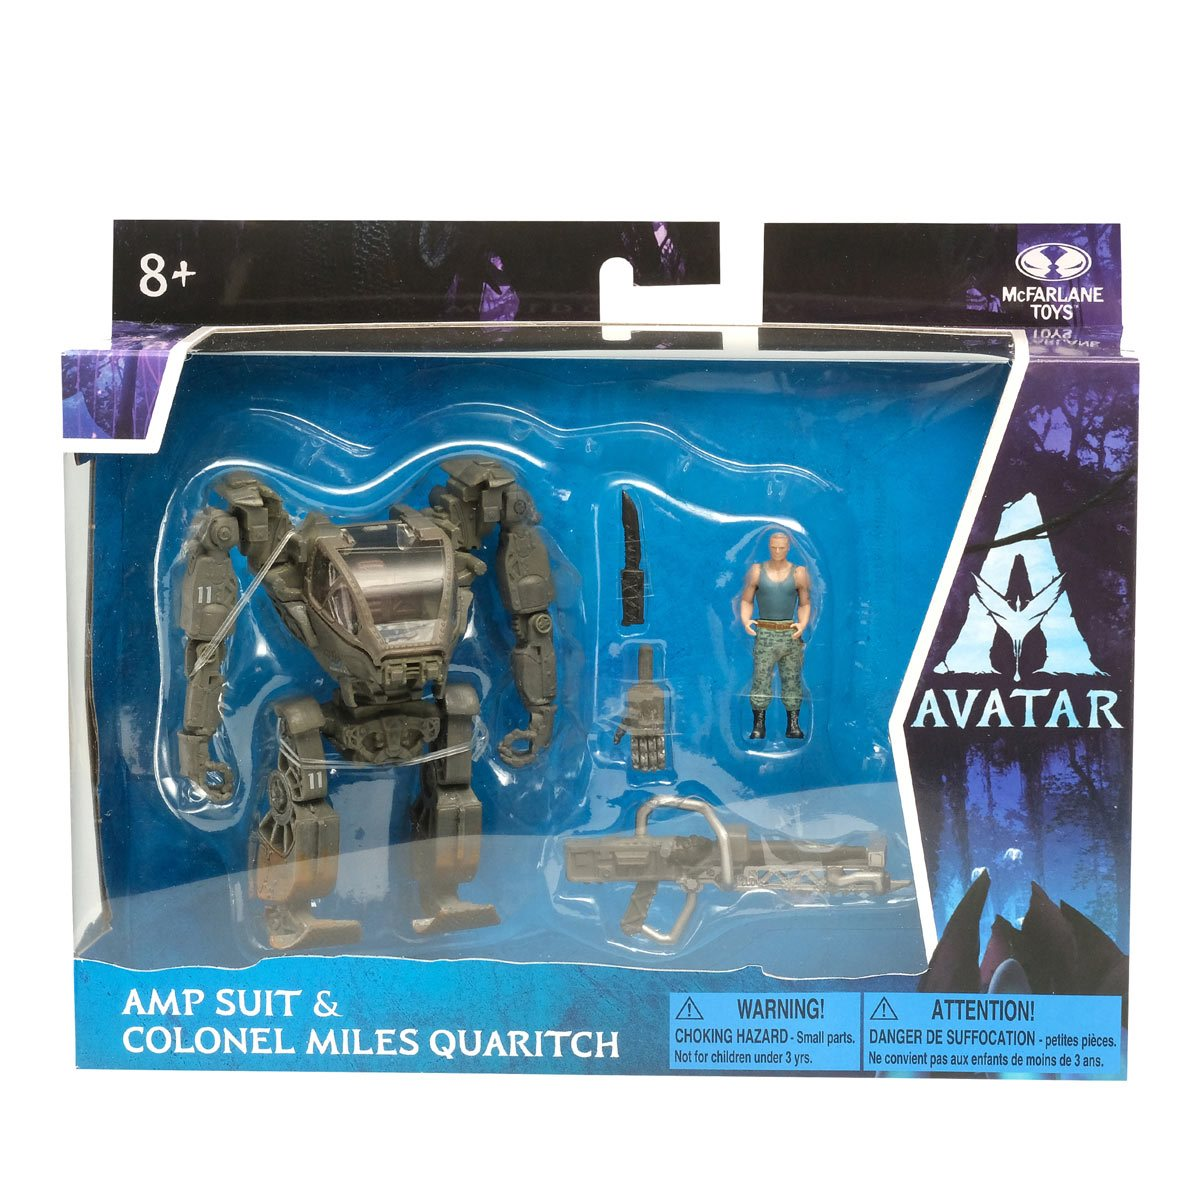 Avatar 1 World of Pandora AMP Suit and Colonel Miles Quatrich Medium Deluxe Action Figure